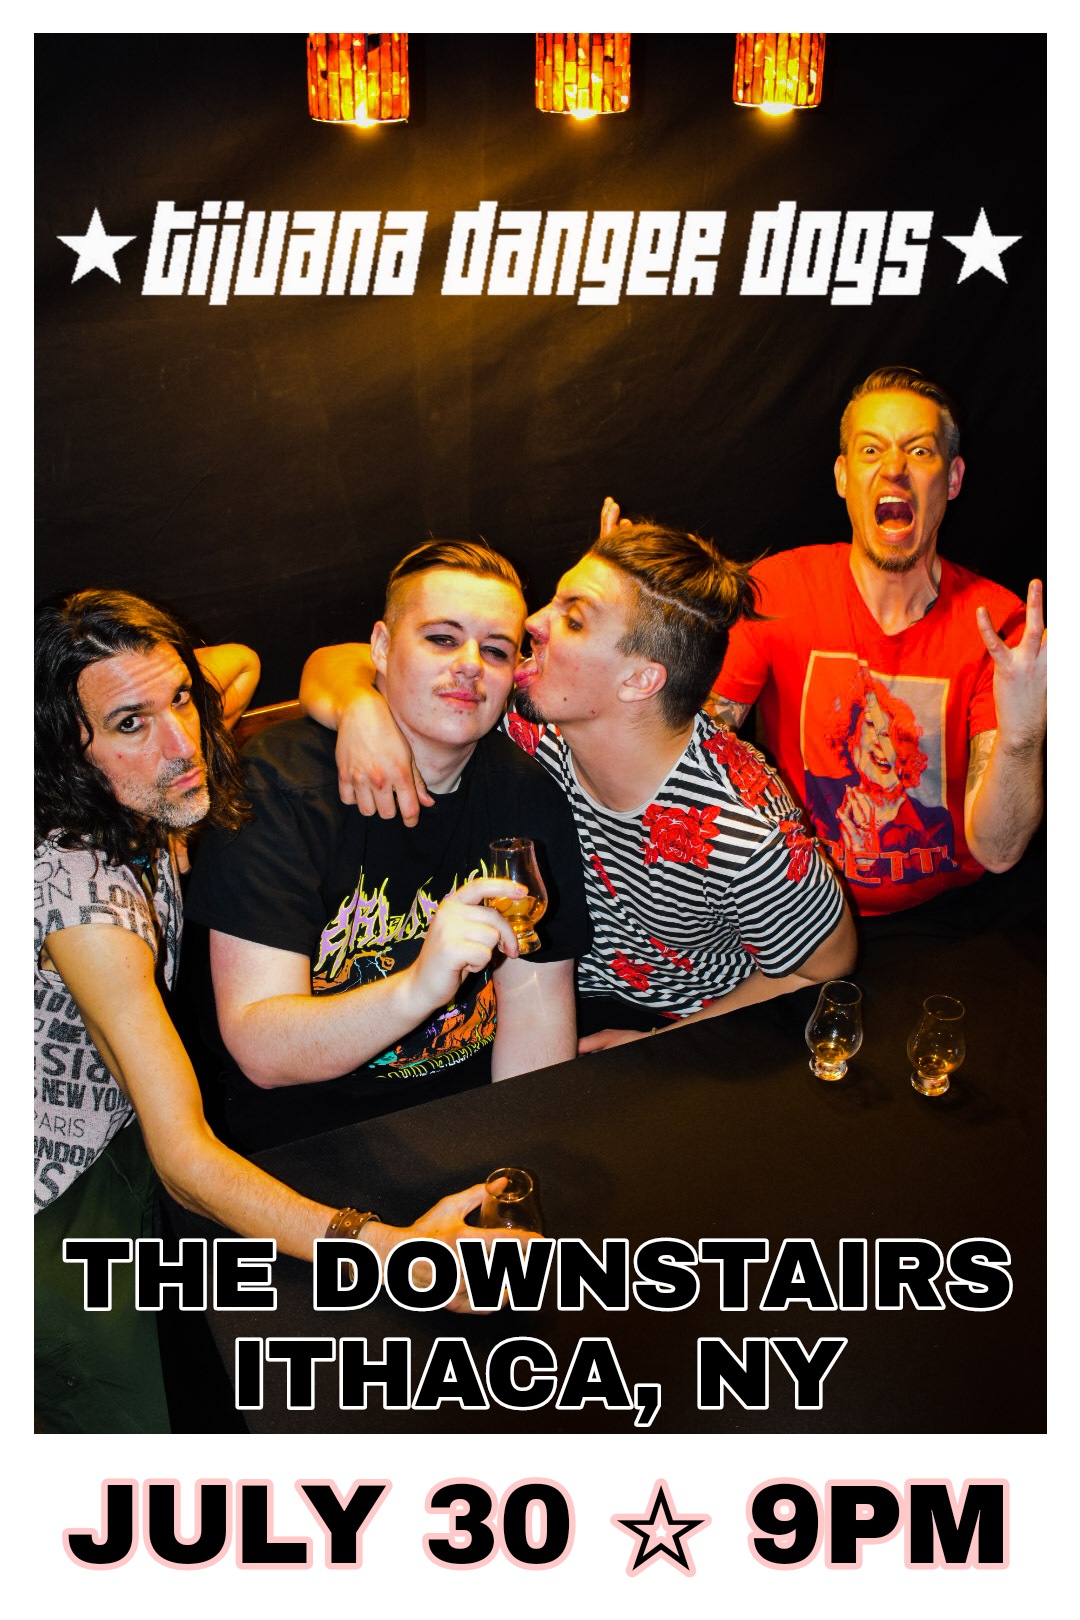 Tijuana Danger Dogs @ The Downstairs